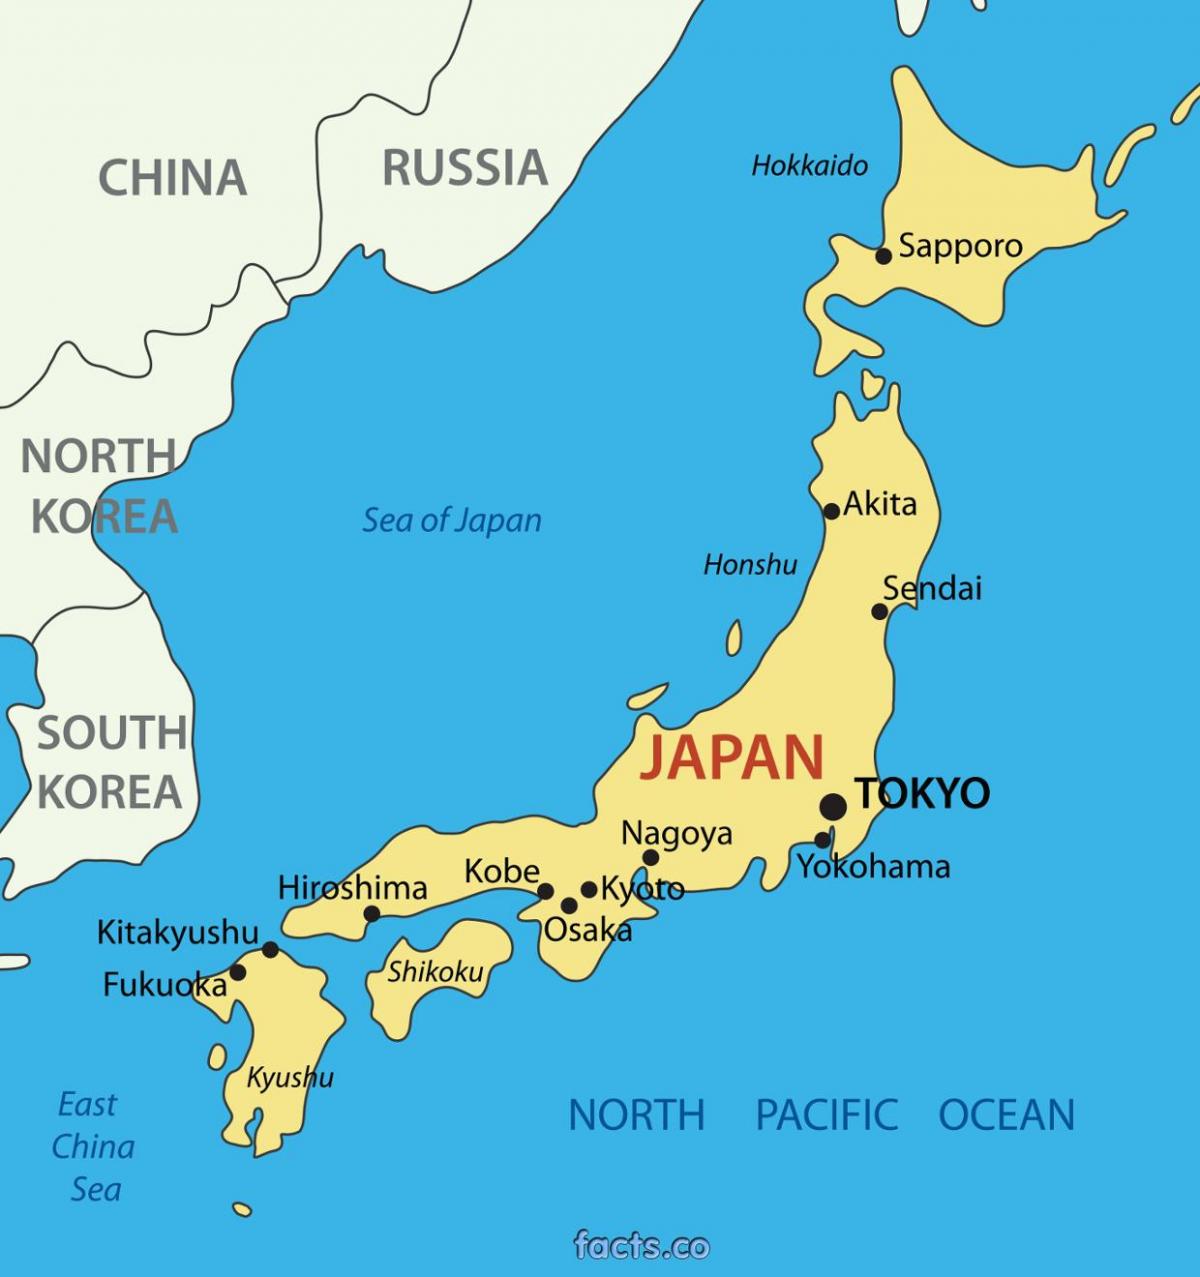 طوكيو خريطة الموقع